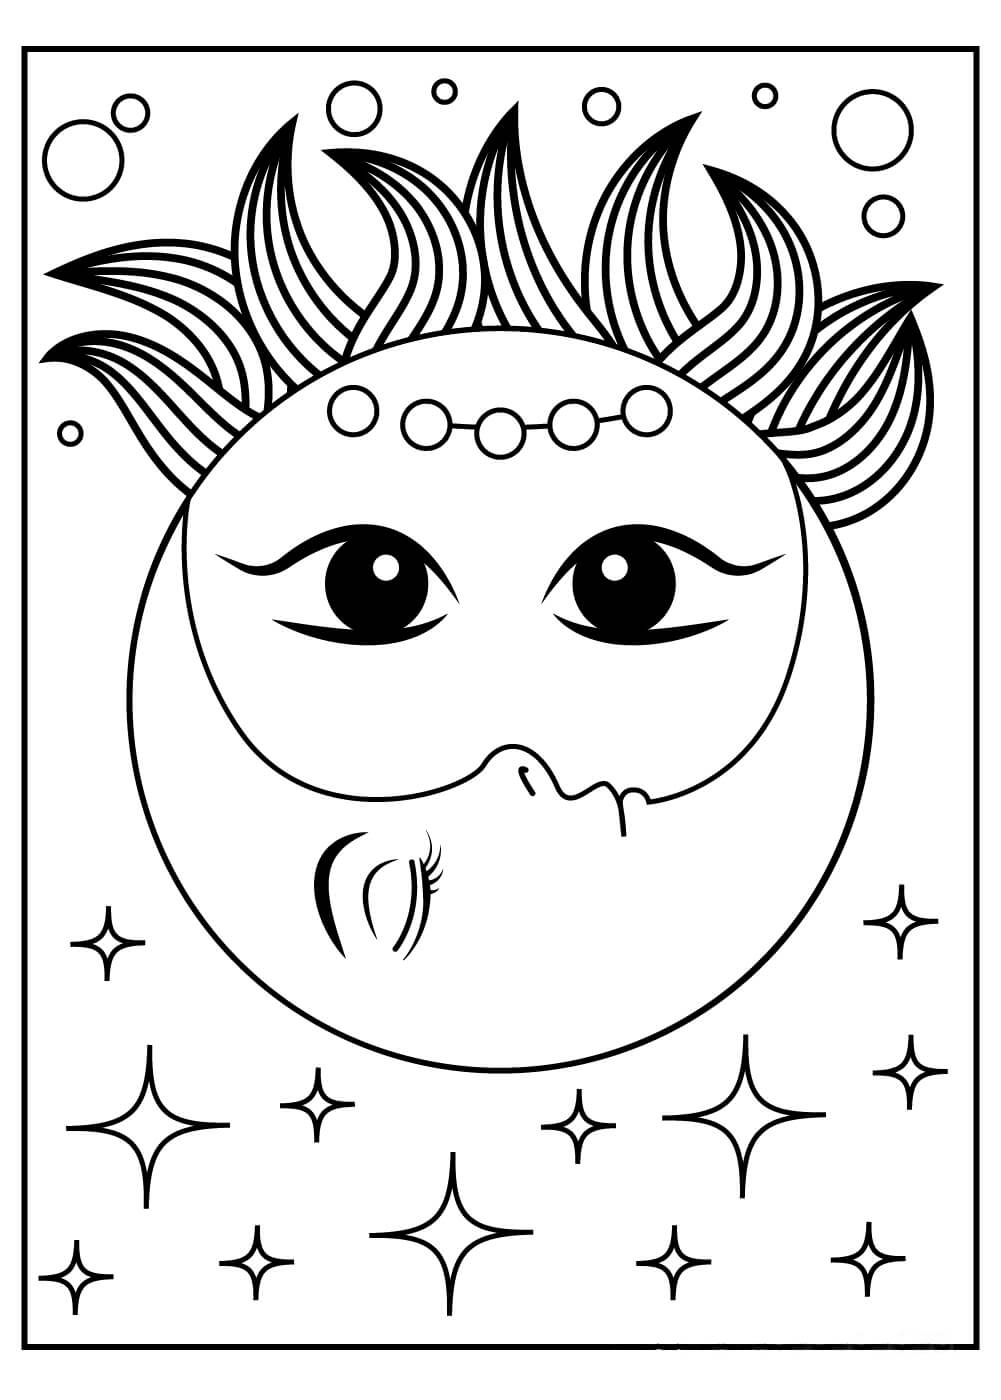 Soleil et Lune coloring page